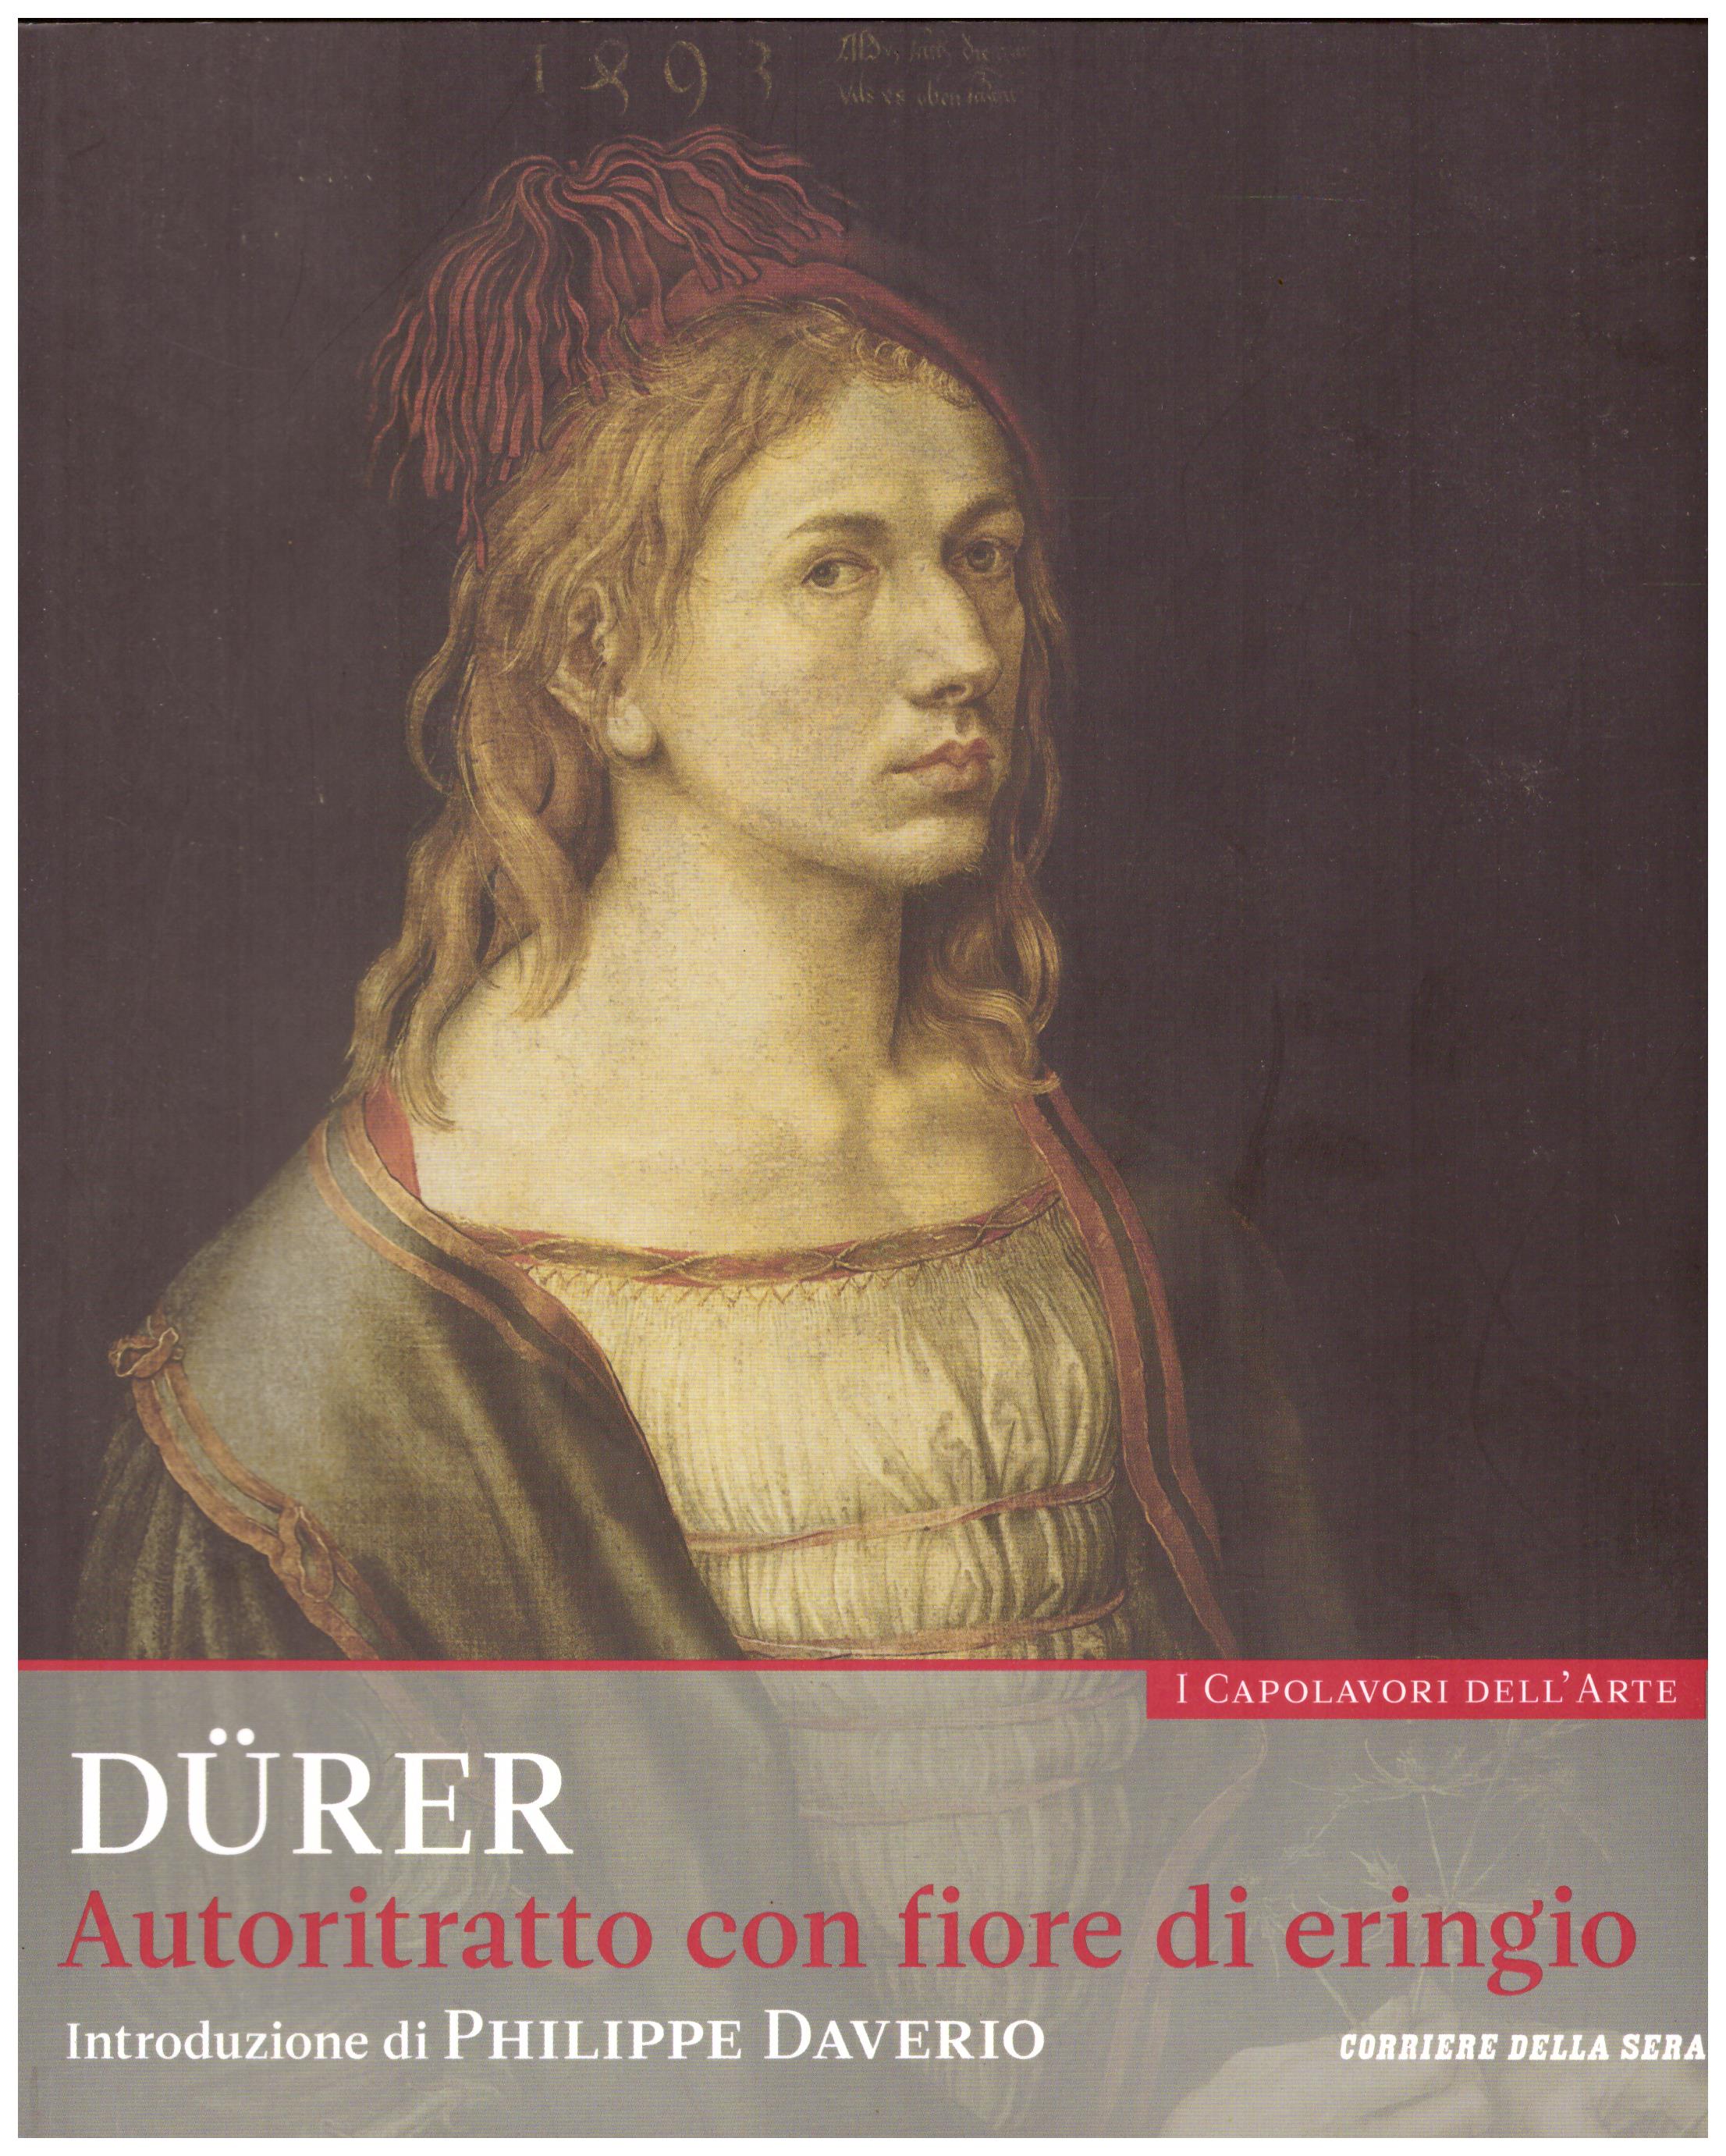 Titolo: I capolavori dell'arte,Durer n.32  Autore : AA.VV.   Editore: education,it/corriere della sera, 2015